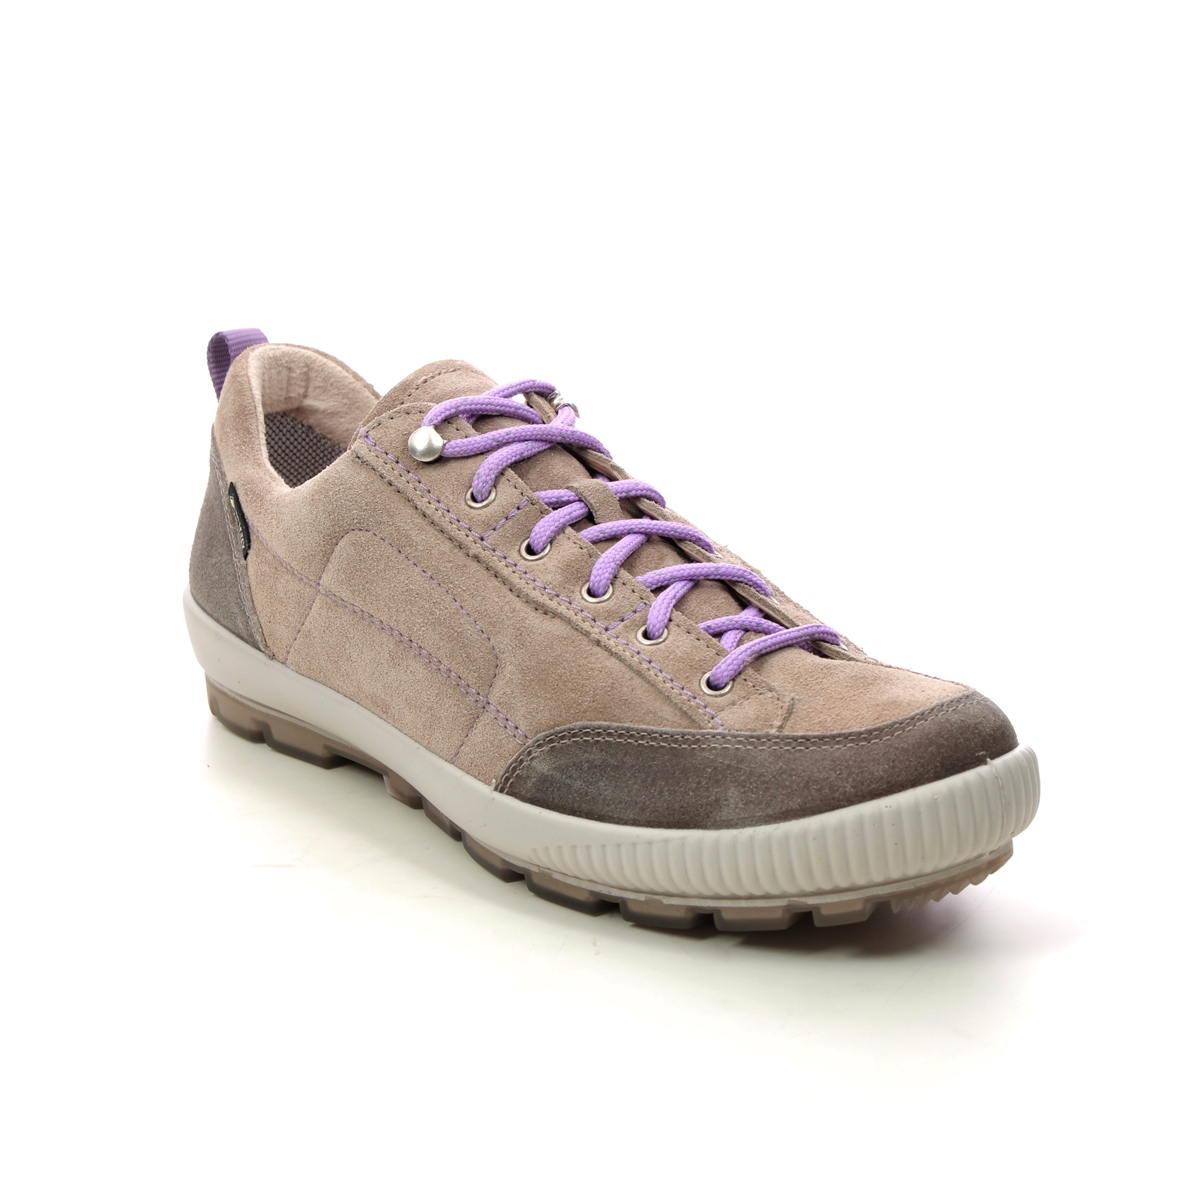 Legero Tanaro Trek Gtx Beige Leather Womens Walking Shoes 2000210-4500 In Size 8 In Plain Beige Leather